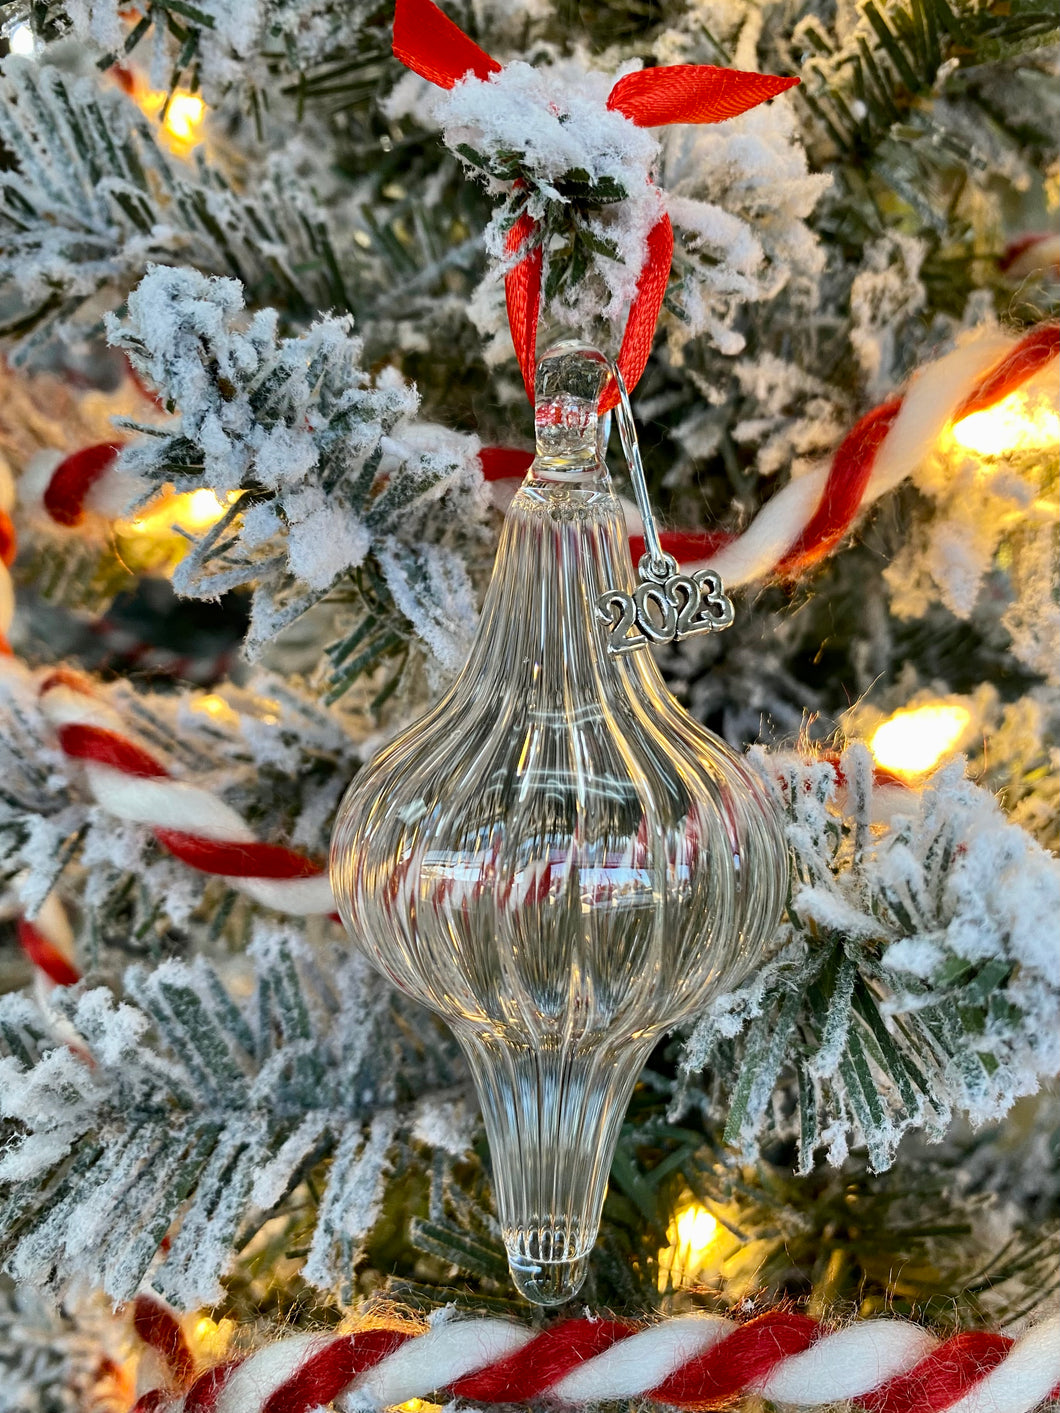 Scalloped glass ornament